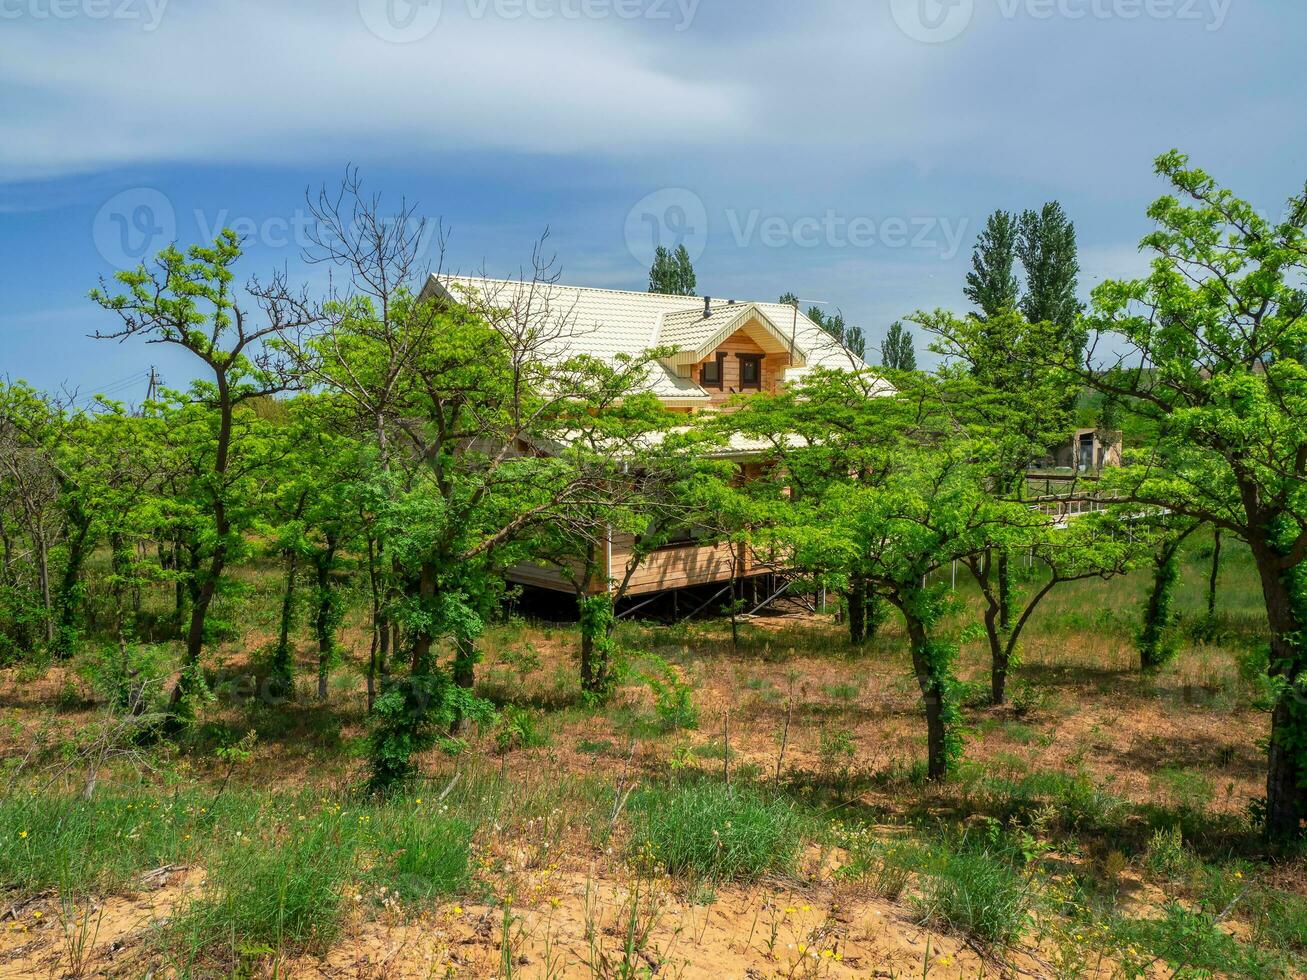 gast huis met wit dak. houten huisje in weelderig groen in de woestijn. foto